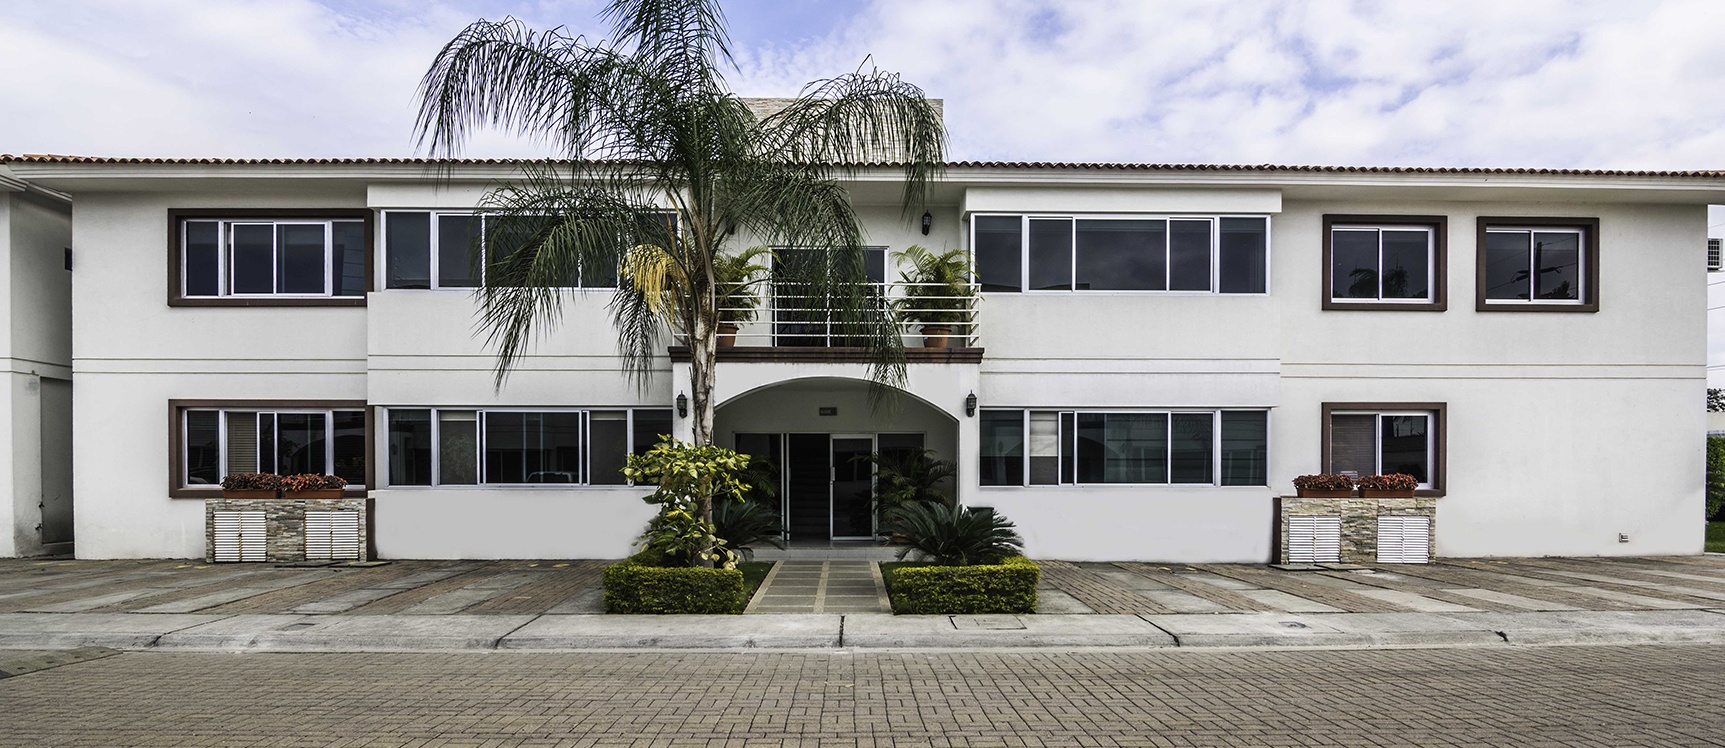 GeoBienes - Departamento en alquiler en Urbanización Singapur vía a Samborondón - Plusvalia Guayaquil Casas de venta y alquiler Inmobiliaria Ecuador